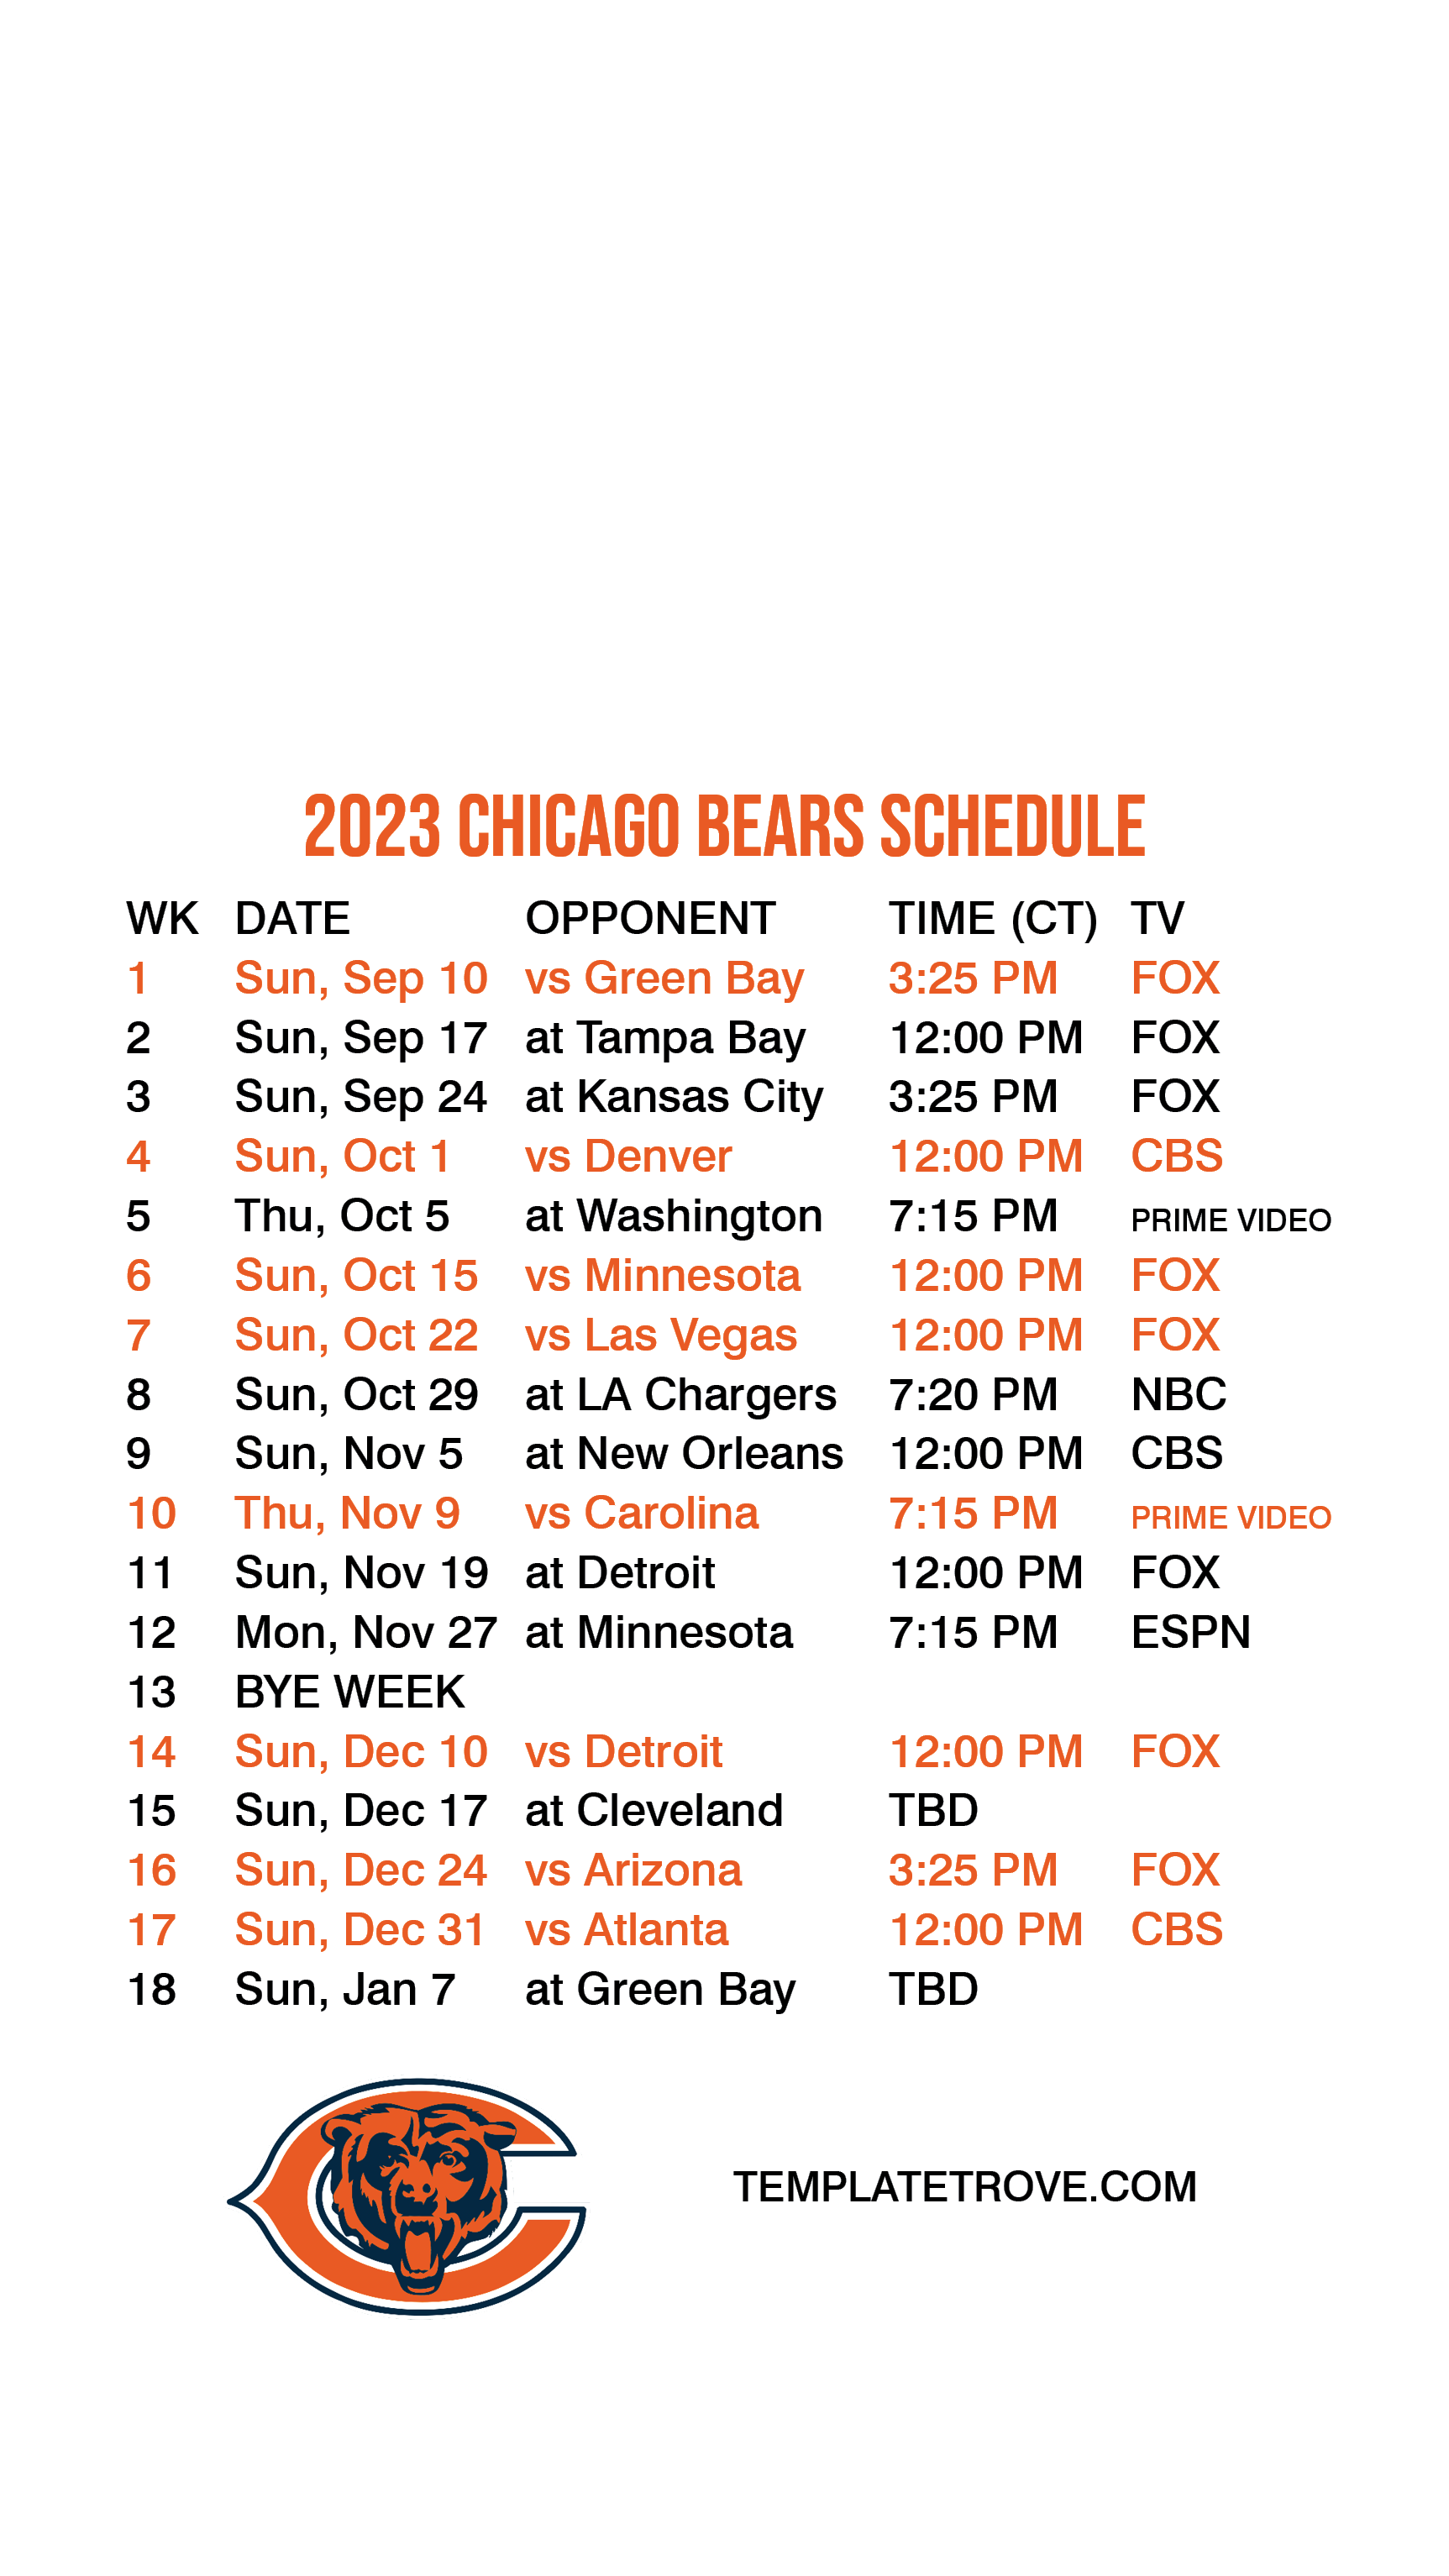 2023 Bears schedule: Downloadable wallpaper